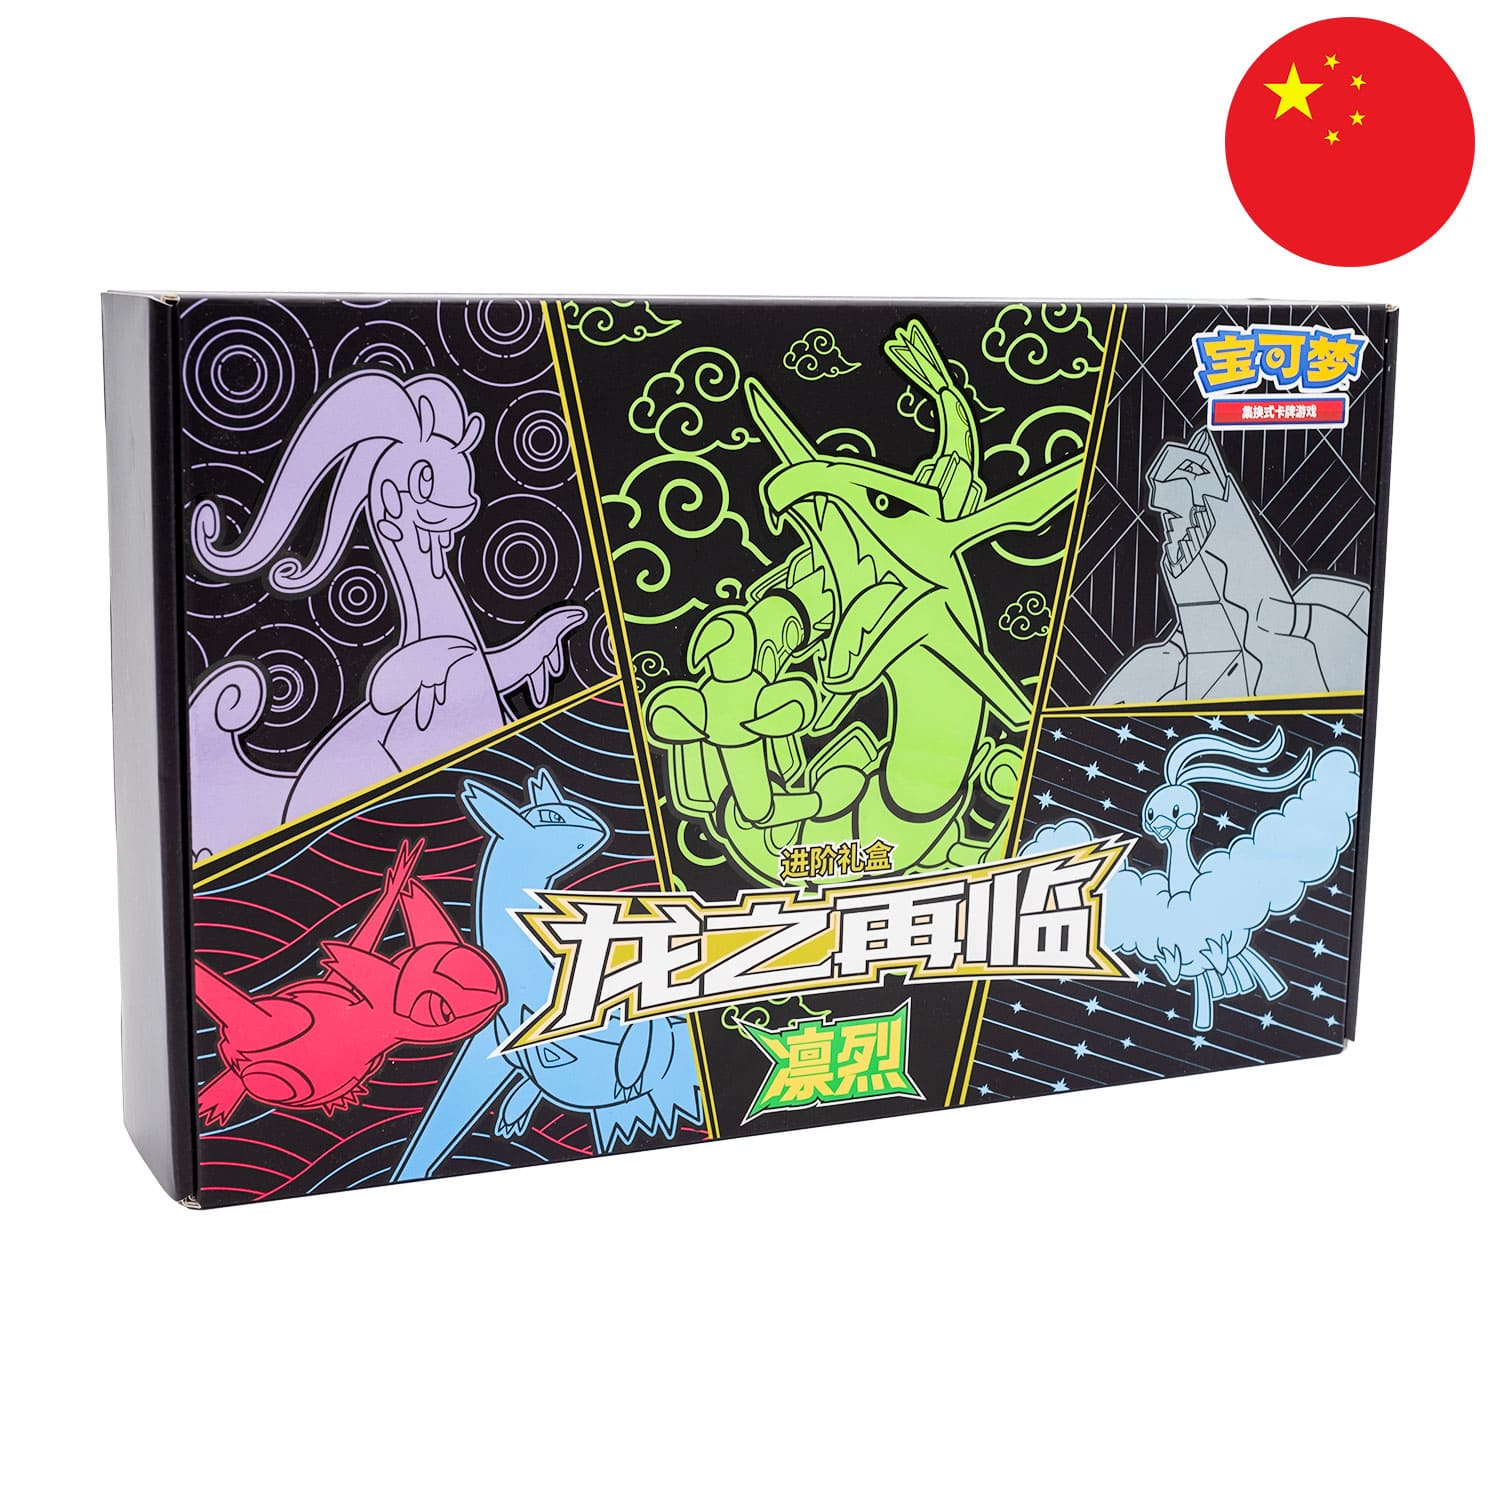 Die Chinesische Return of the Dragon Box - Rayquaza, frontal&schräg als Hauptbild, mit der Flagge Chinas in der Ecke.